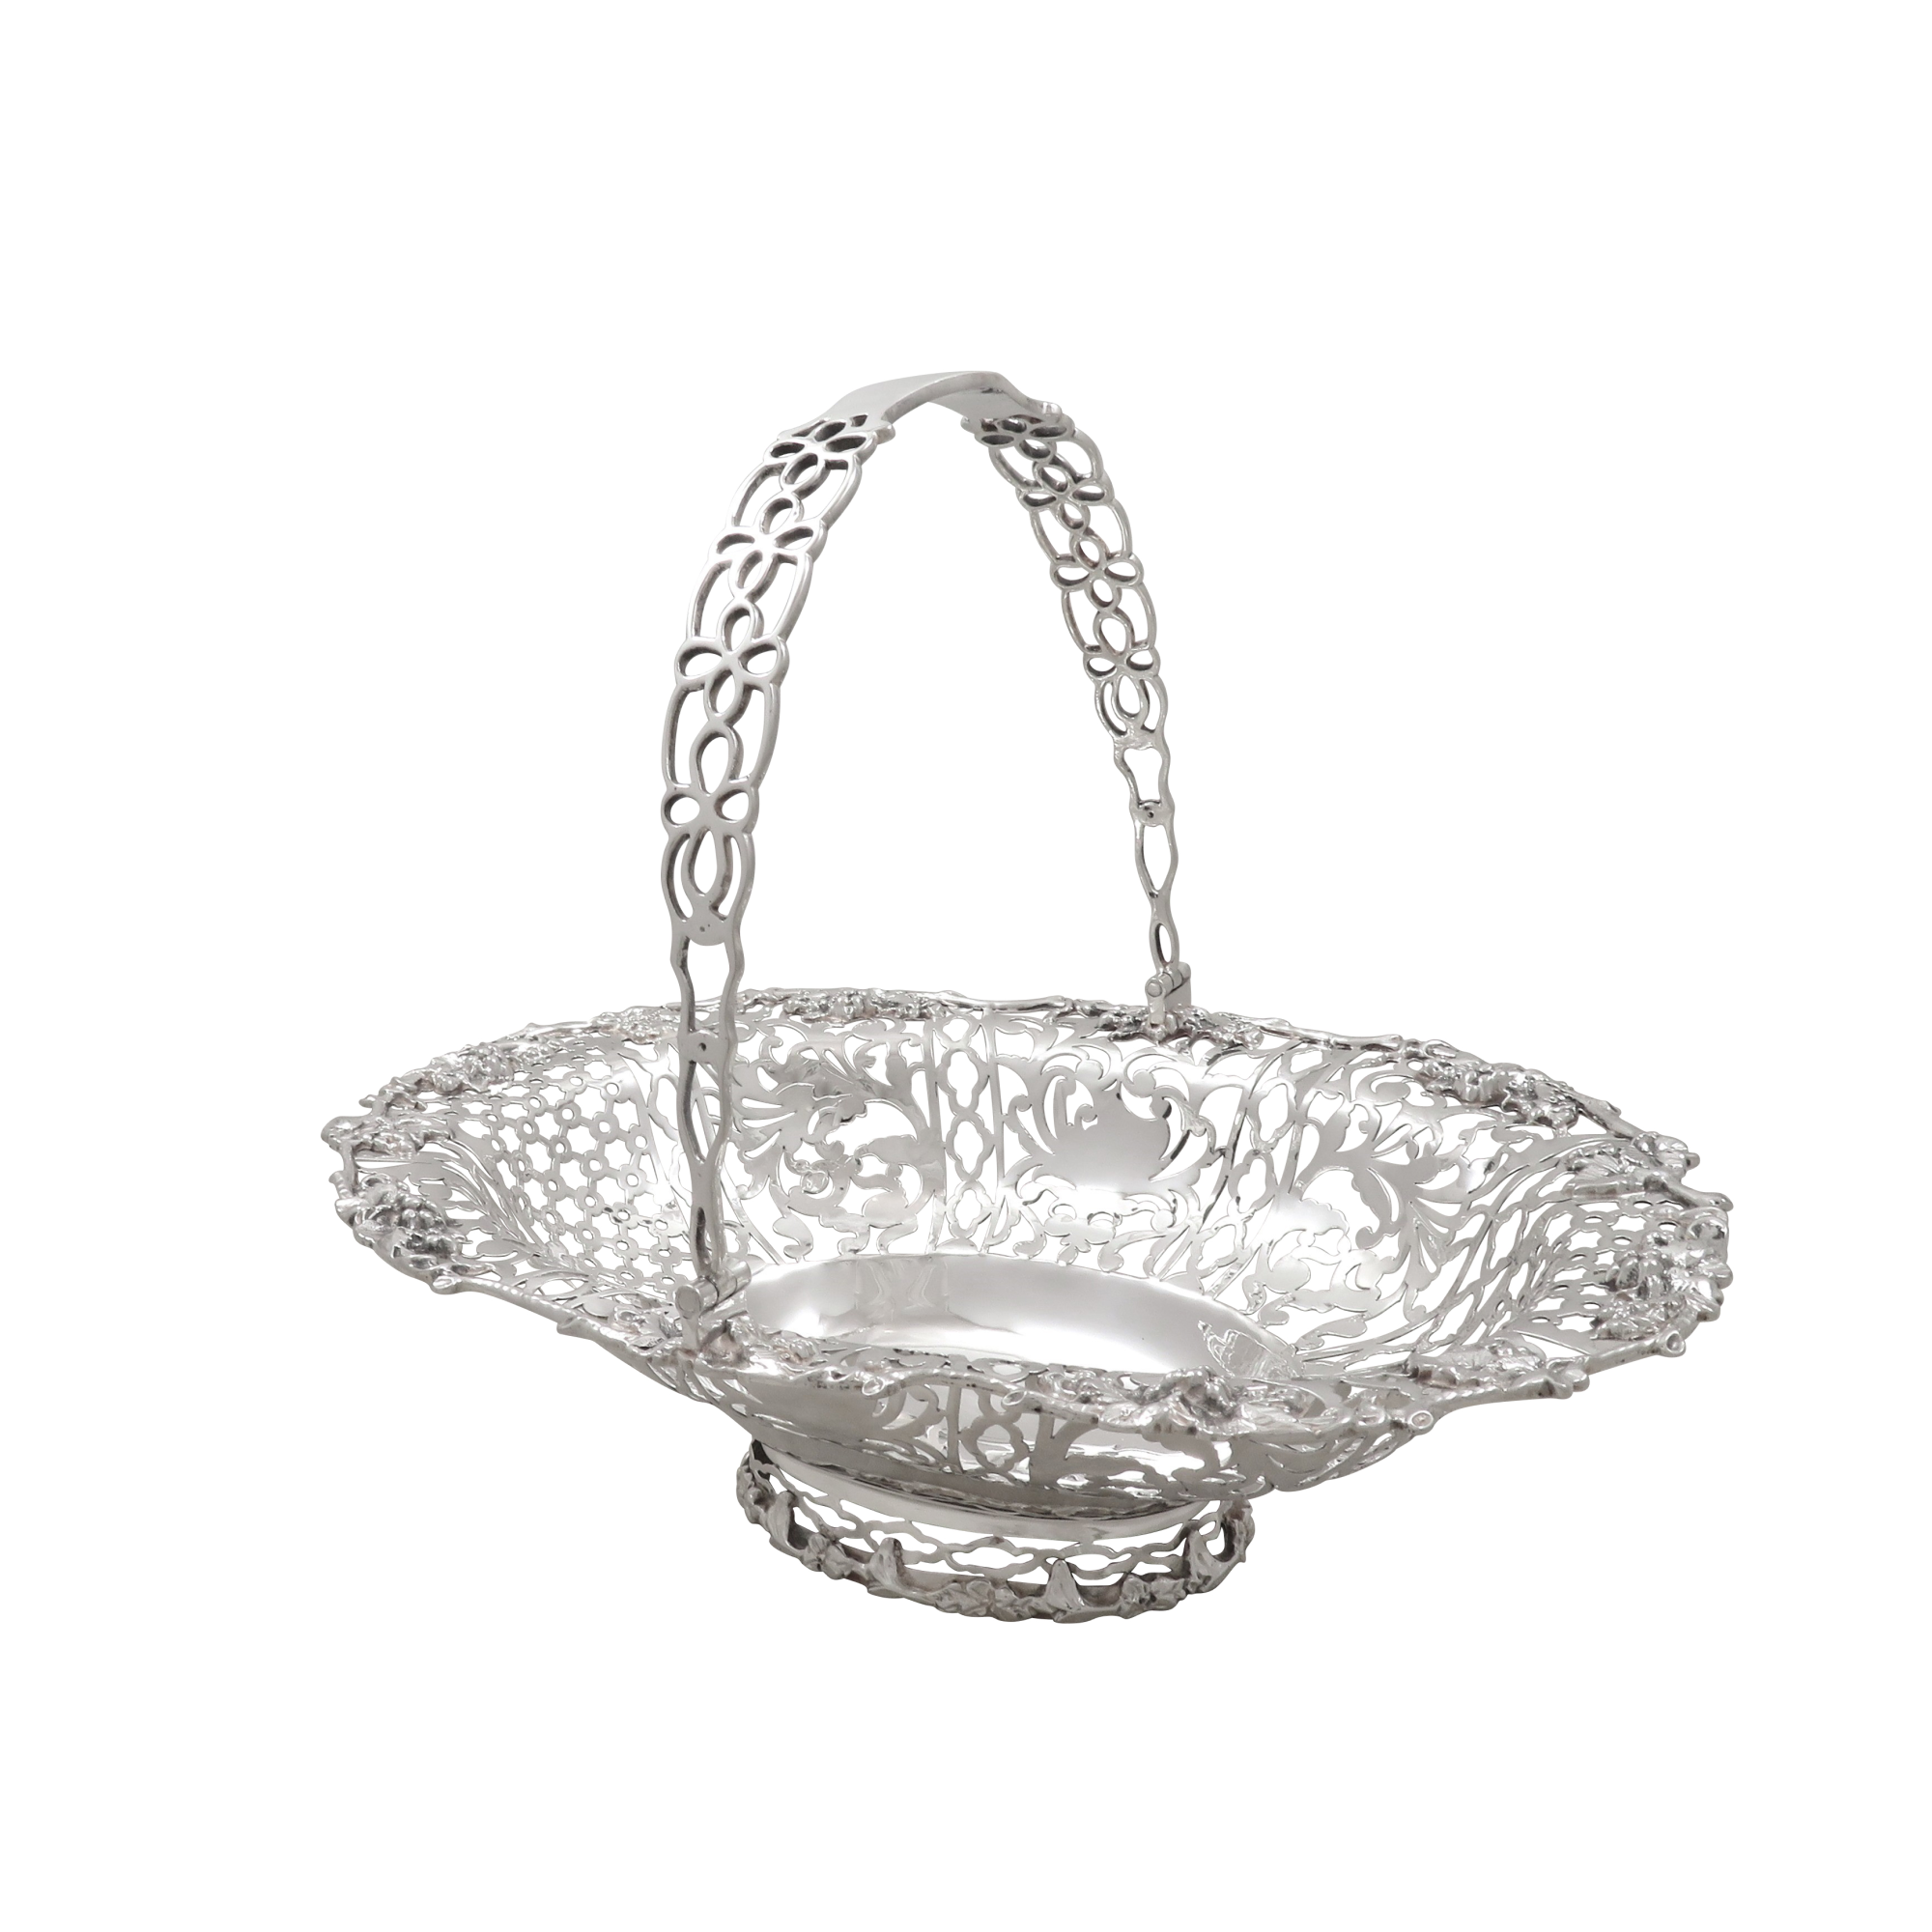 Antique Edwardian Sterling Silver 10" Basket / Dish 1902